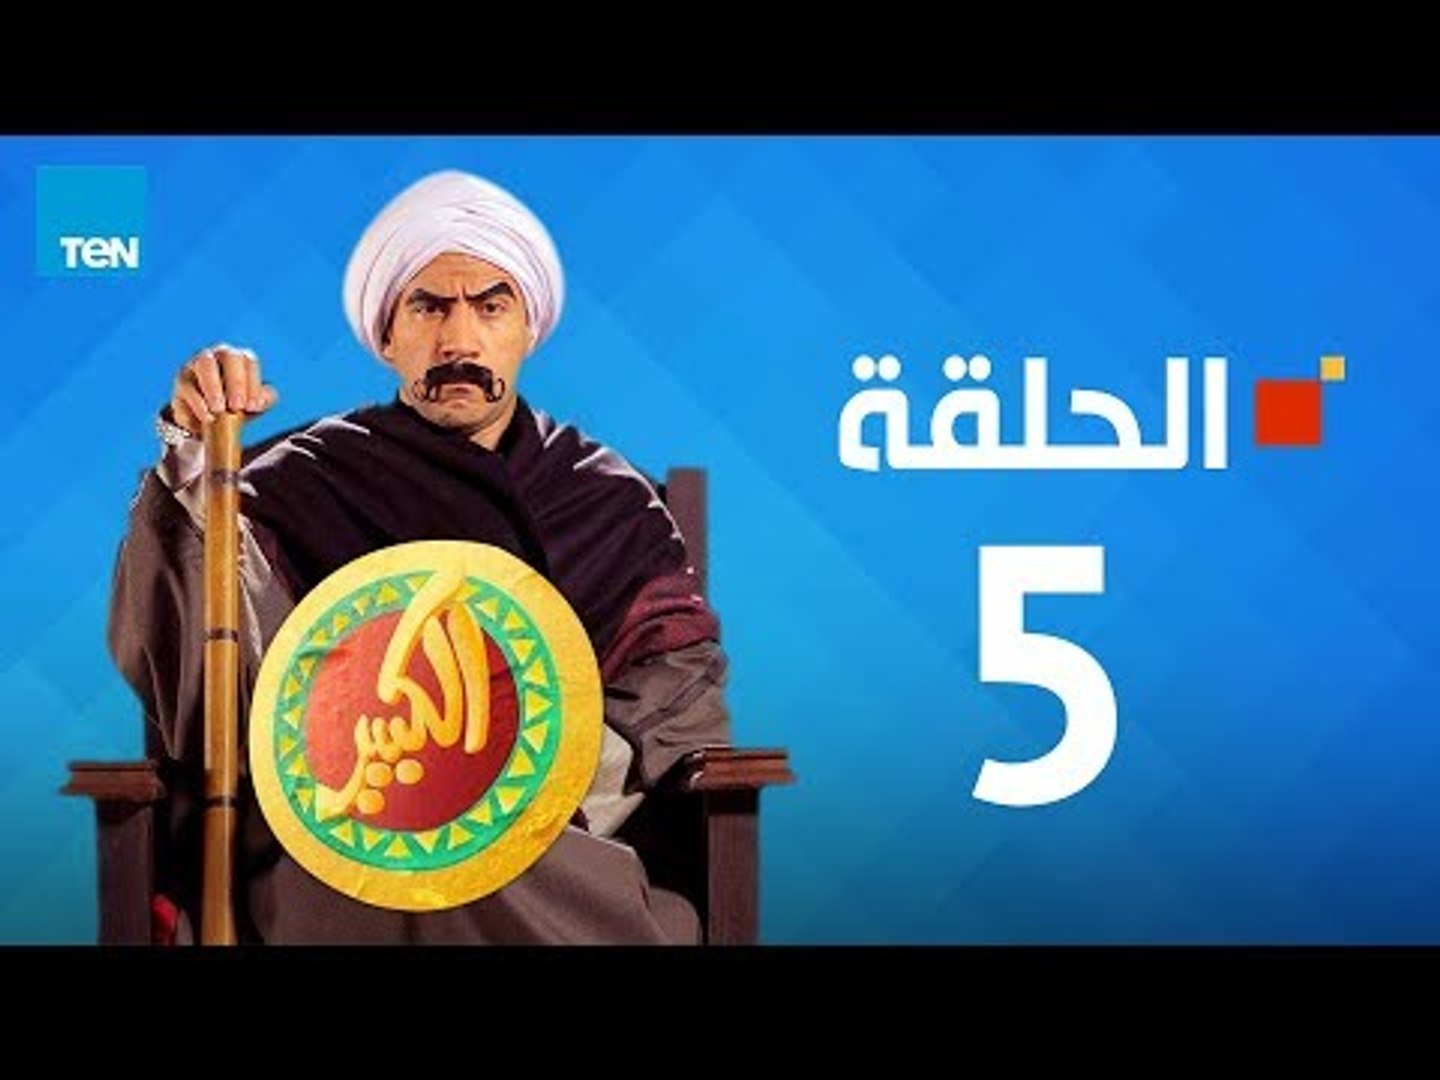 مسلسل الكبير اوي الجزء الأول - احمد مكي - الحلقة 5 الخامسة كاملة | El keber  awi 1 - Episode 5 - فيديو Dailymotion